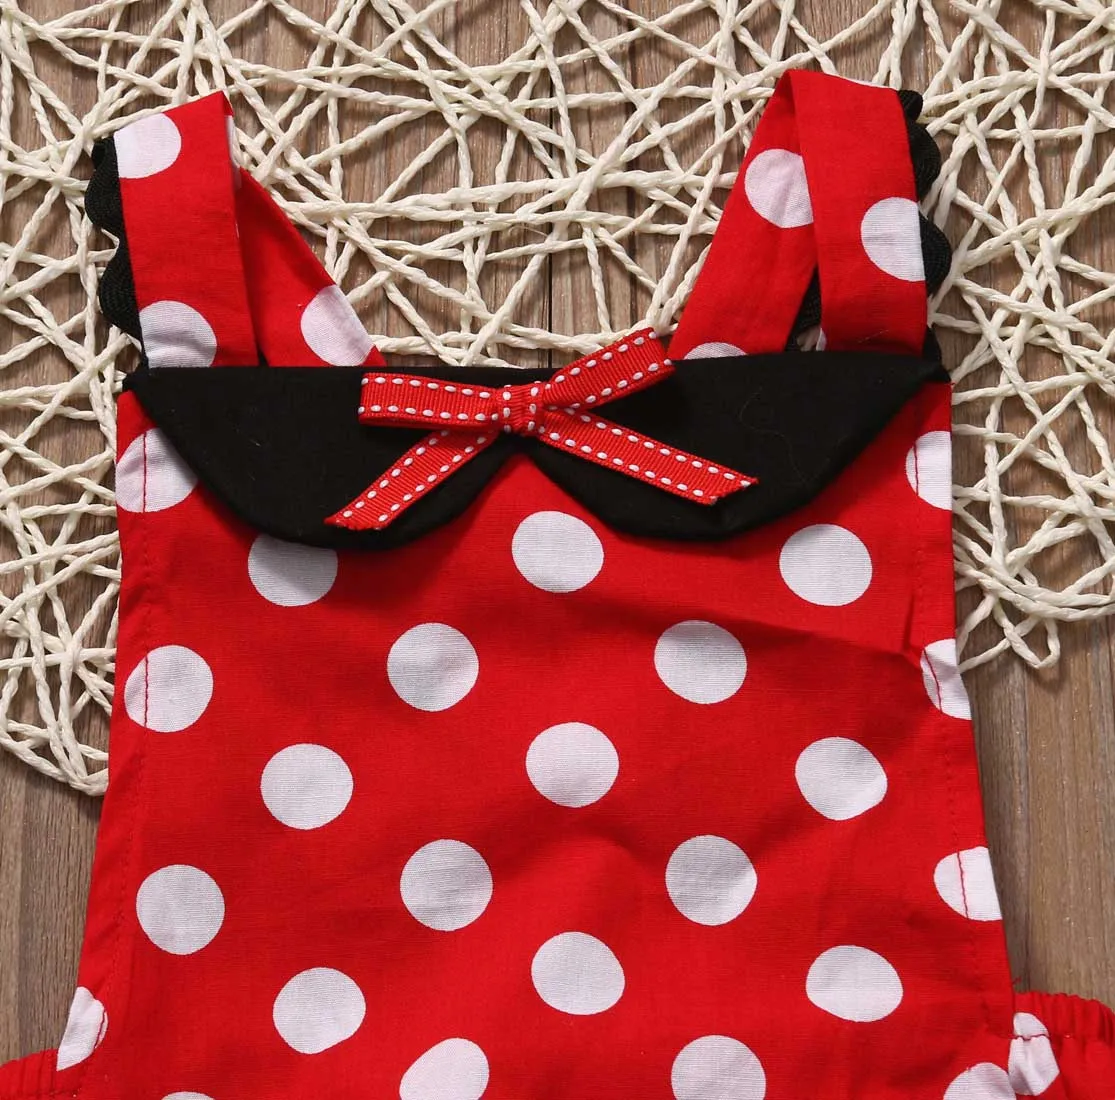 Минни Мышь в горошек комплект для малышей новорожденных для маленьких девочек Летний комбинезон для детей кружевной наряд женский пляжный костюм Детская Костюмы